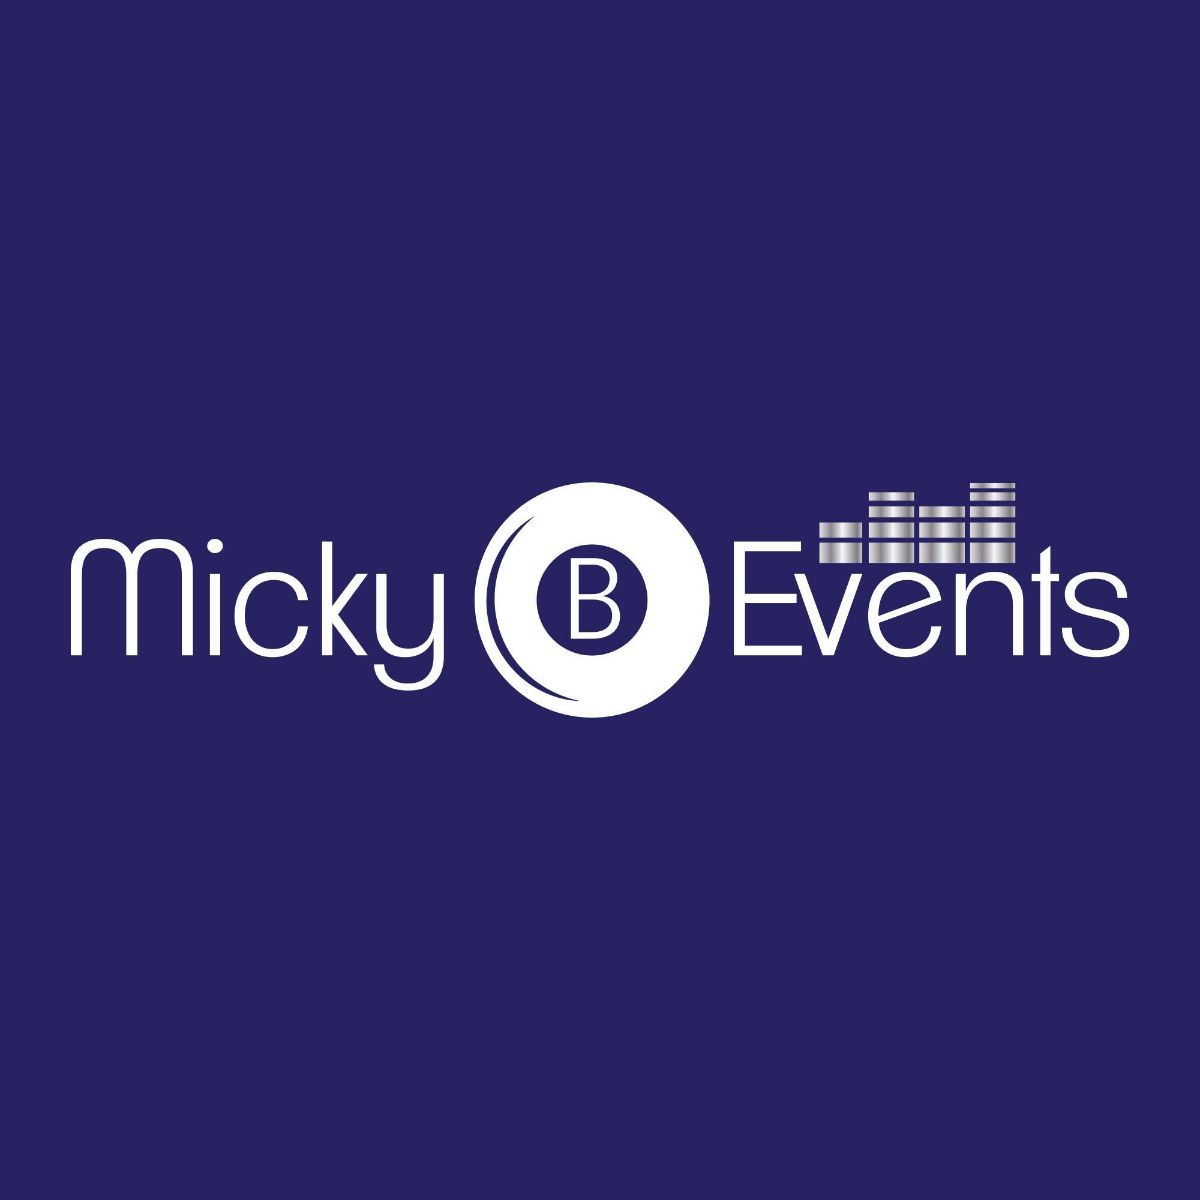 Micky B Events UK-Image-1